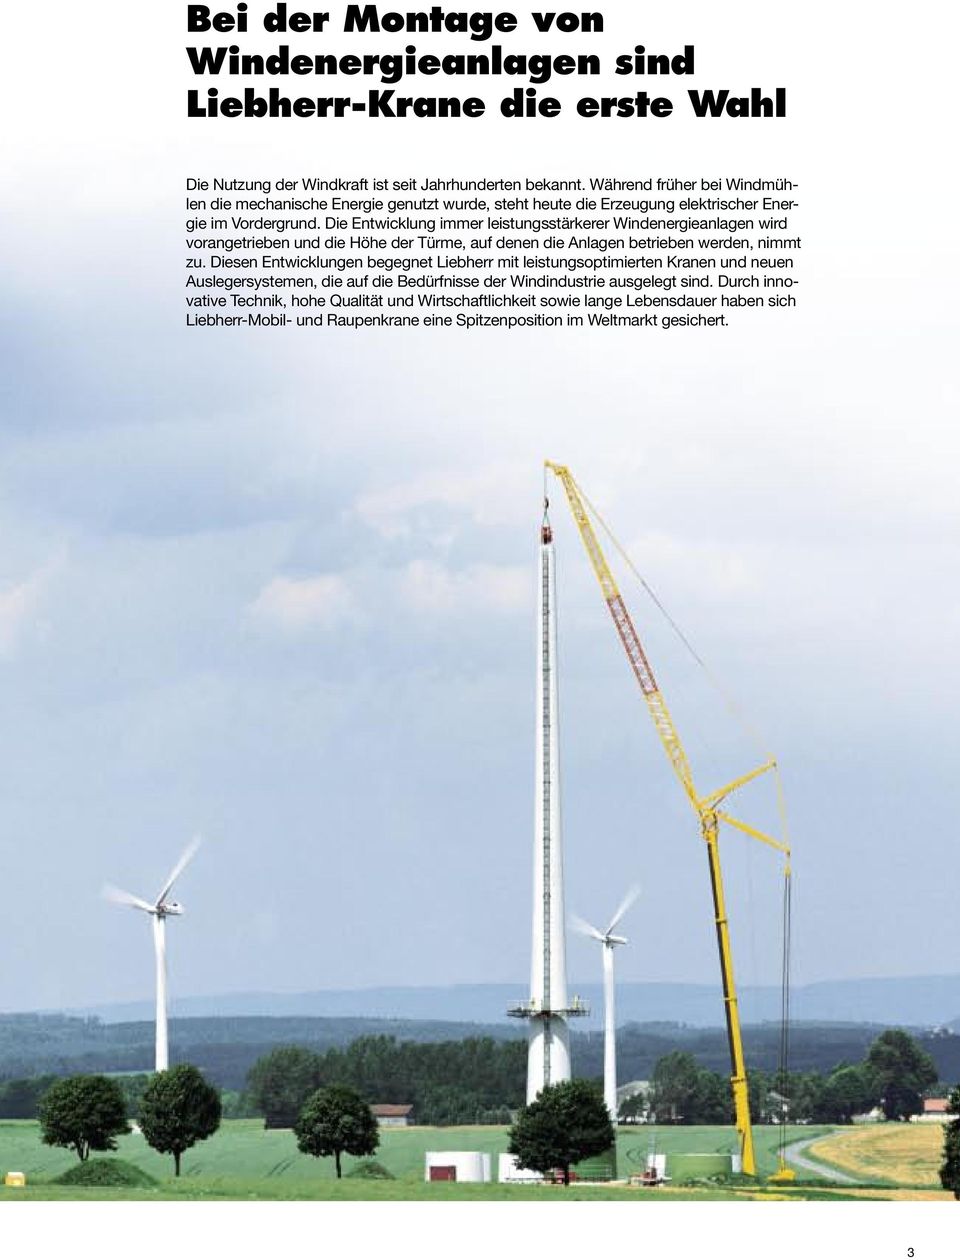 Die Entwicklung immer leistungsstärkerer Windenergieanlagen wird vorangetrieben und die Höhe der Türme, auf denen die Anlagen betrieben werden, nimmt zu.